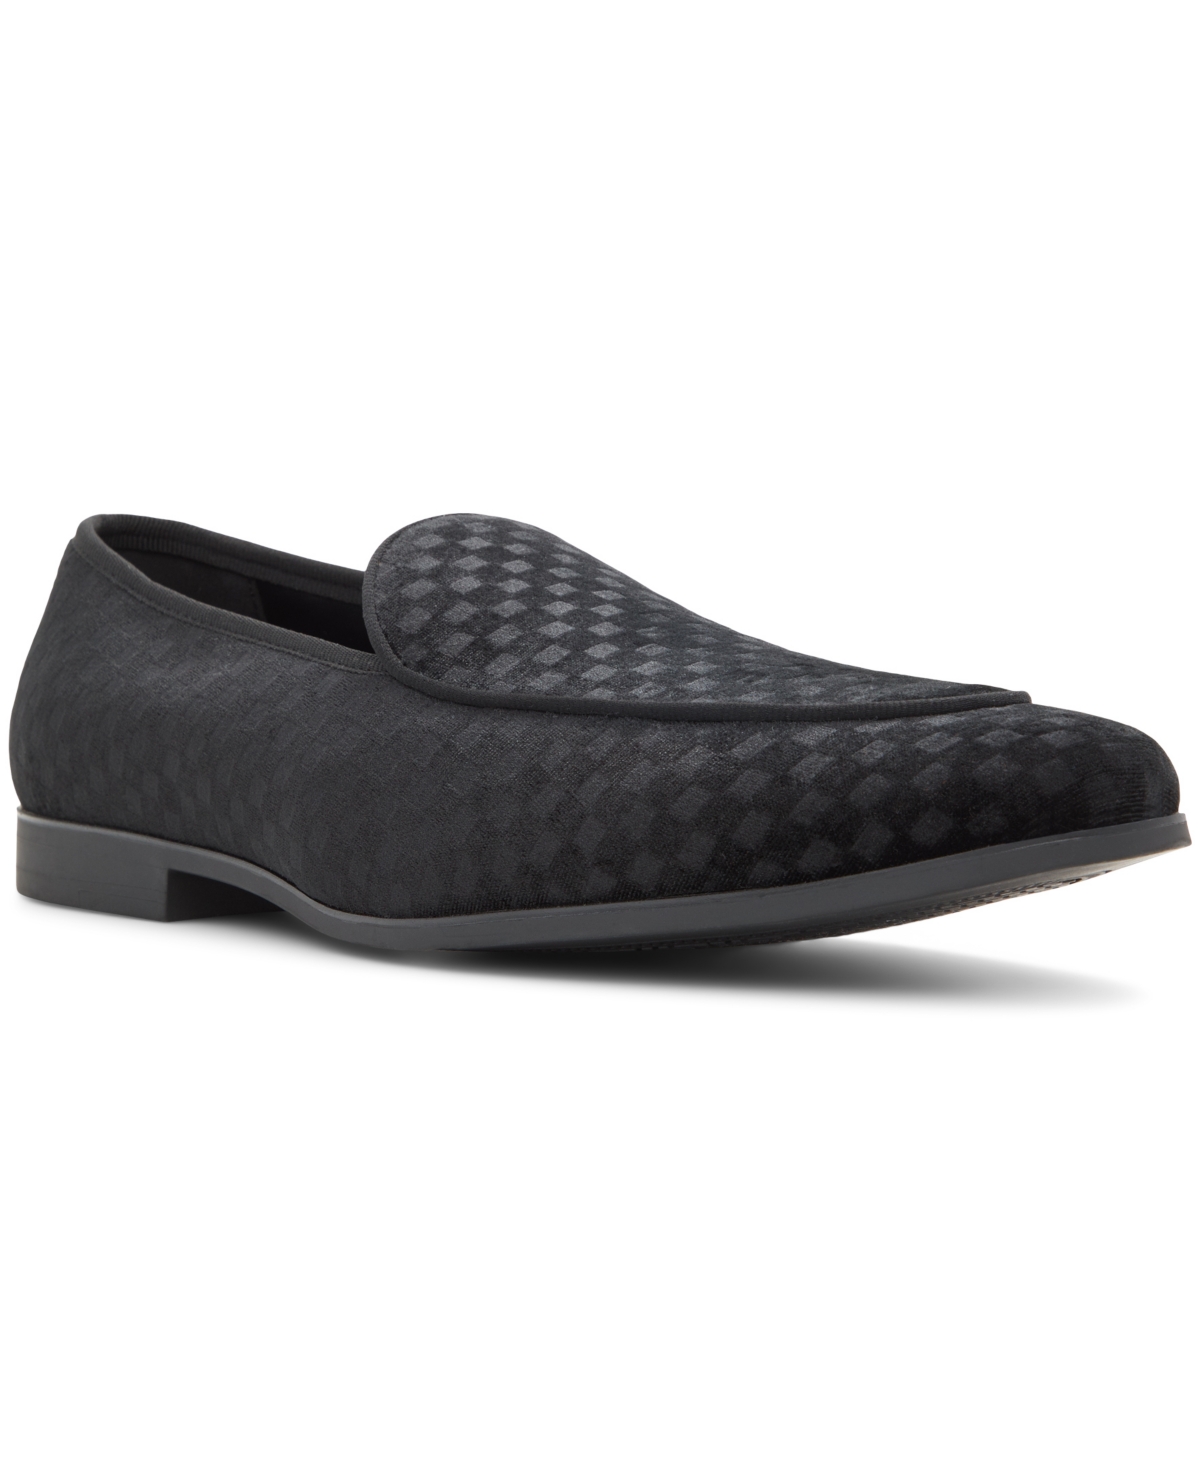 Men's Ventura Slip-On Loafers - Velvet Black